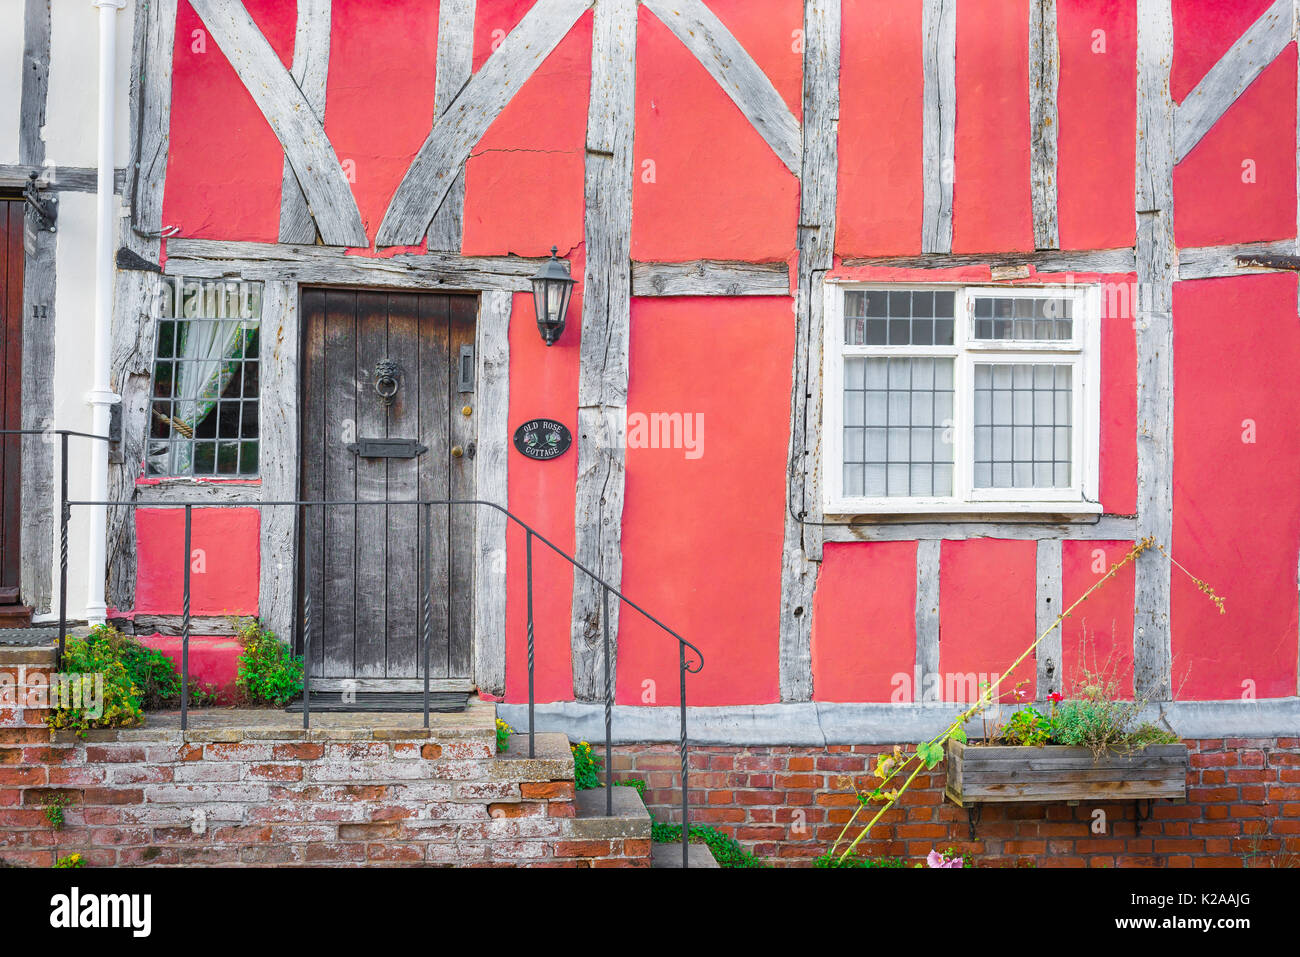 Lavenham Suffolk UK-Gebäude, äußeres Detail eines mittelalterlichen, in Fachwerk ausgeführten rosafarbenen Hauses im Suffolk-Dorf Lavenham, England, Großbritannien Stockfoto